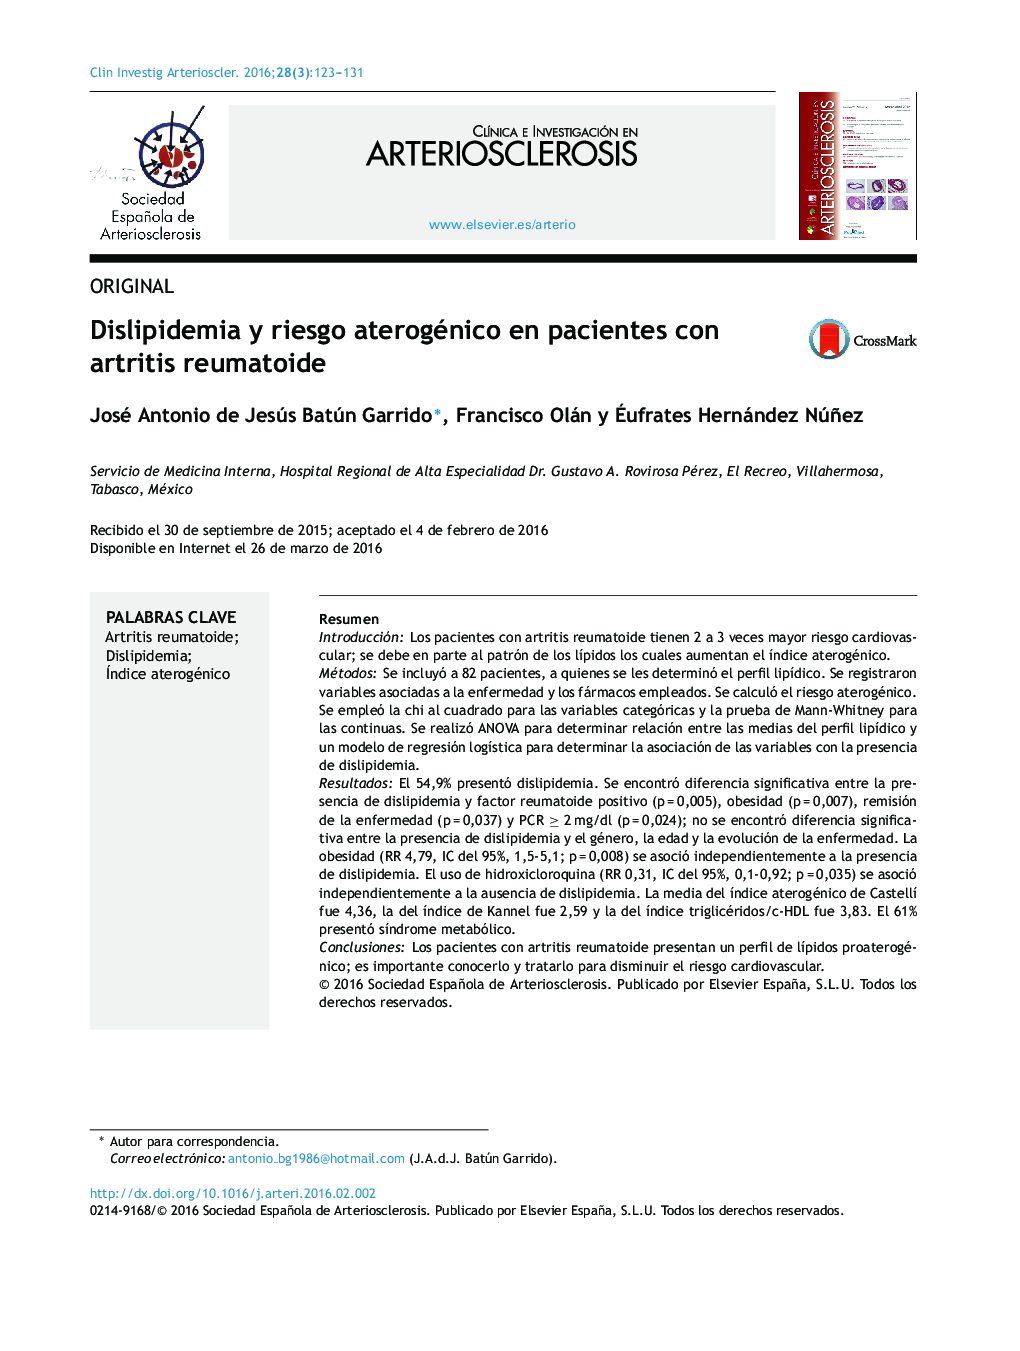 Dislipidemia y riesgo aterogénico en pacientes con artritis reumatoide